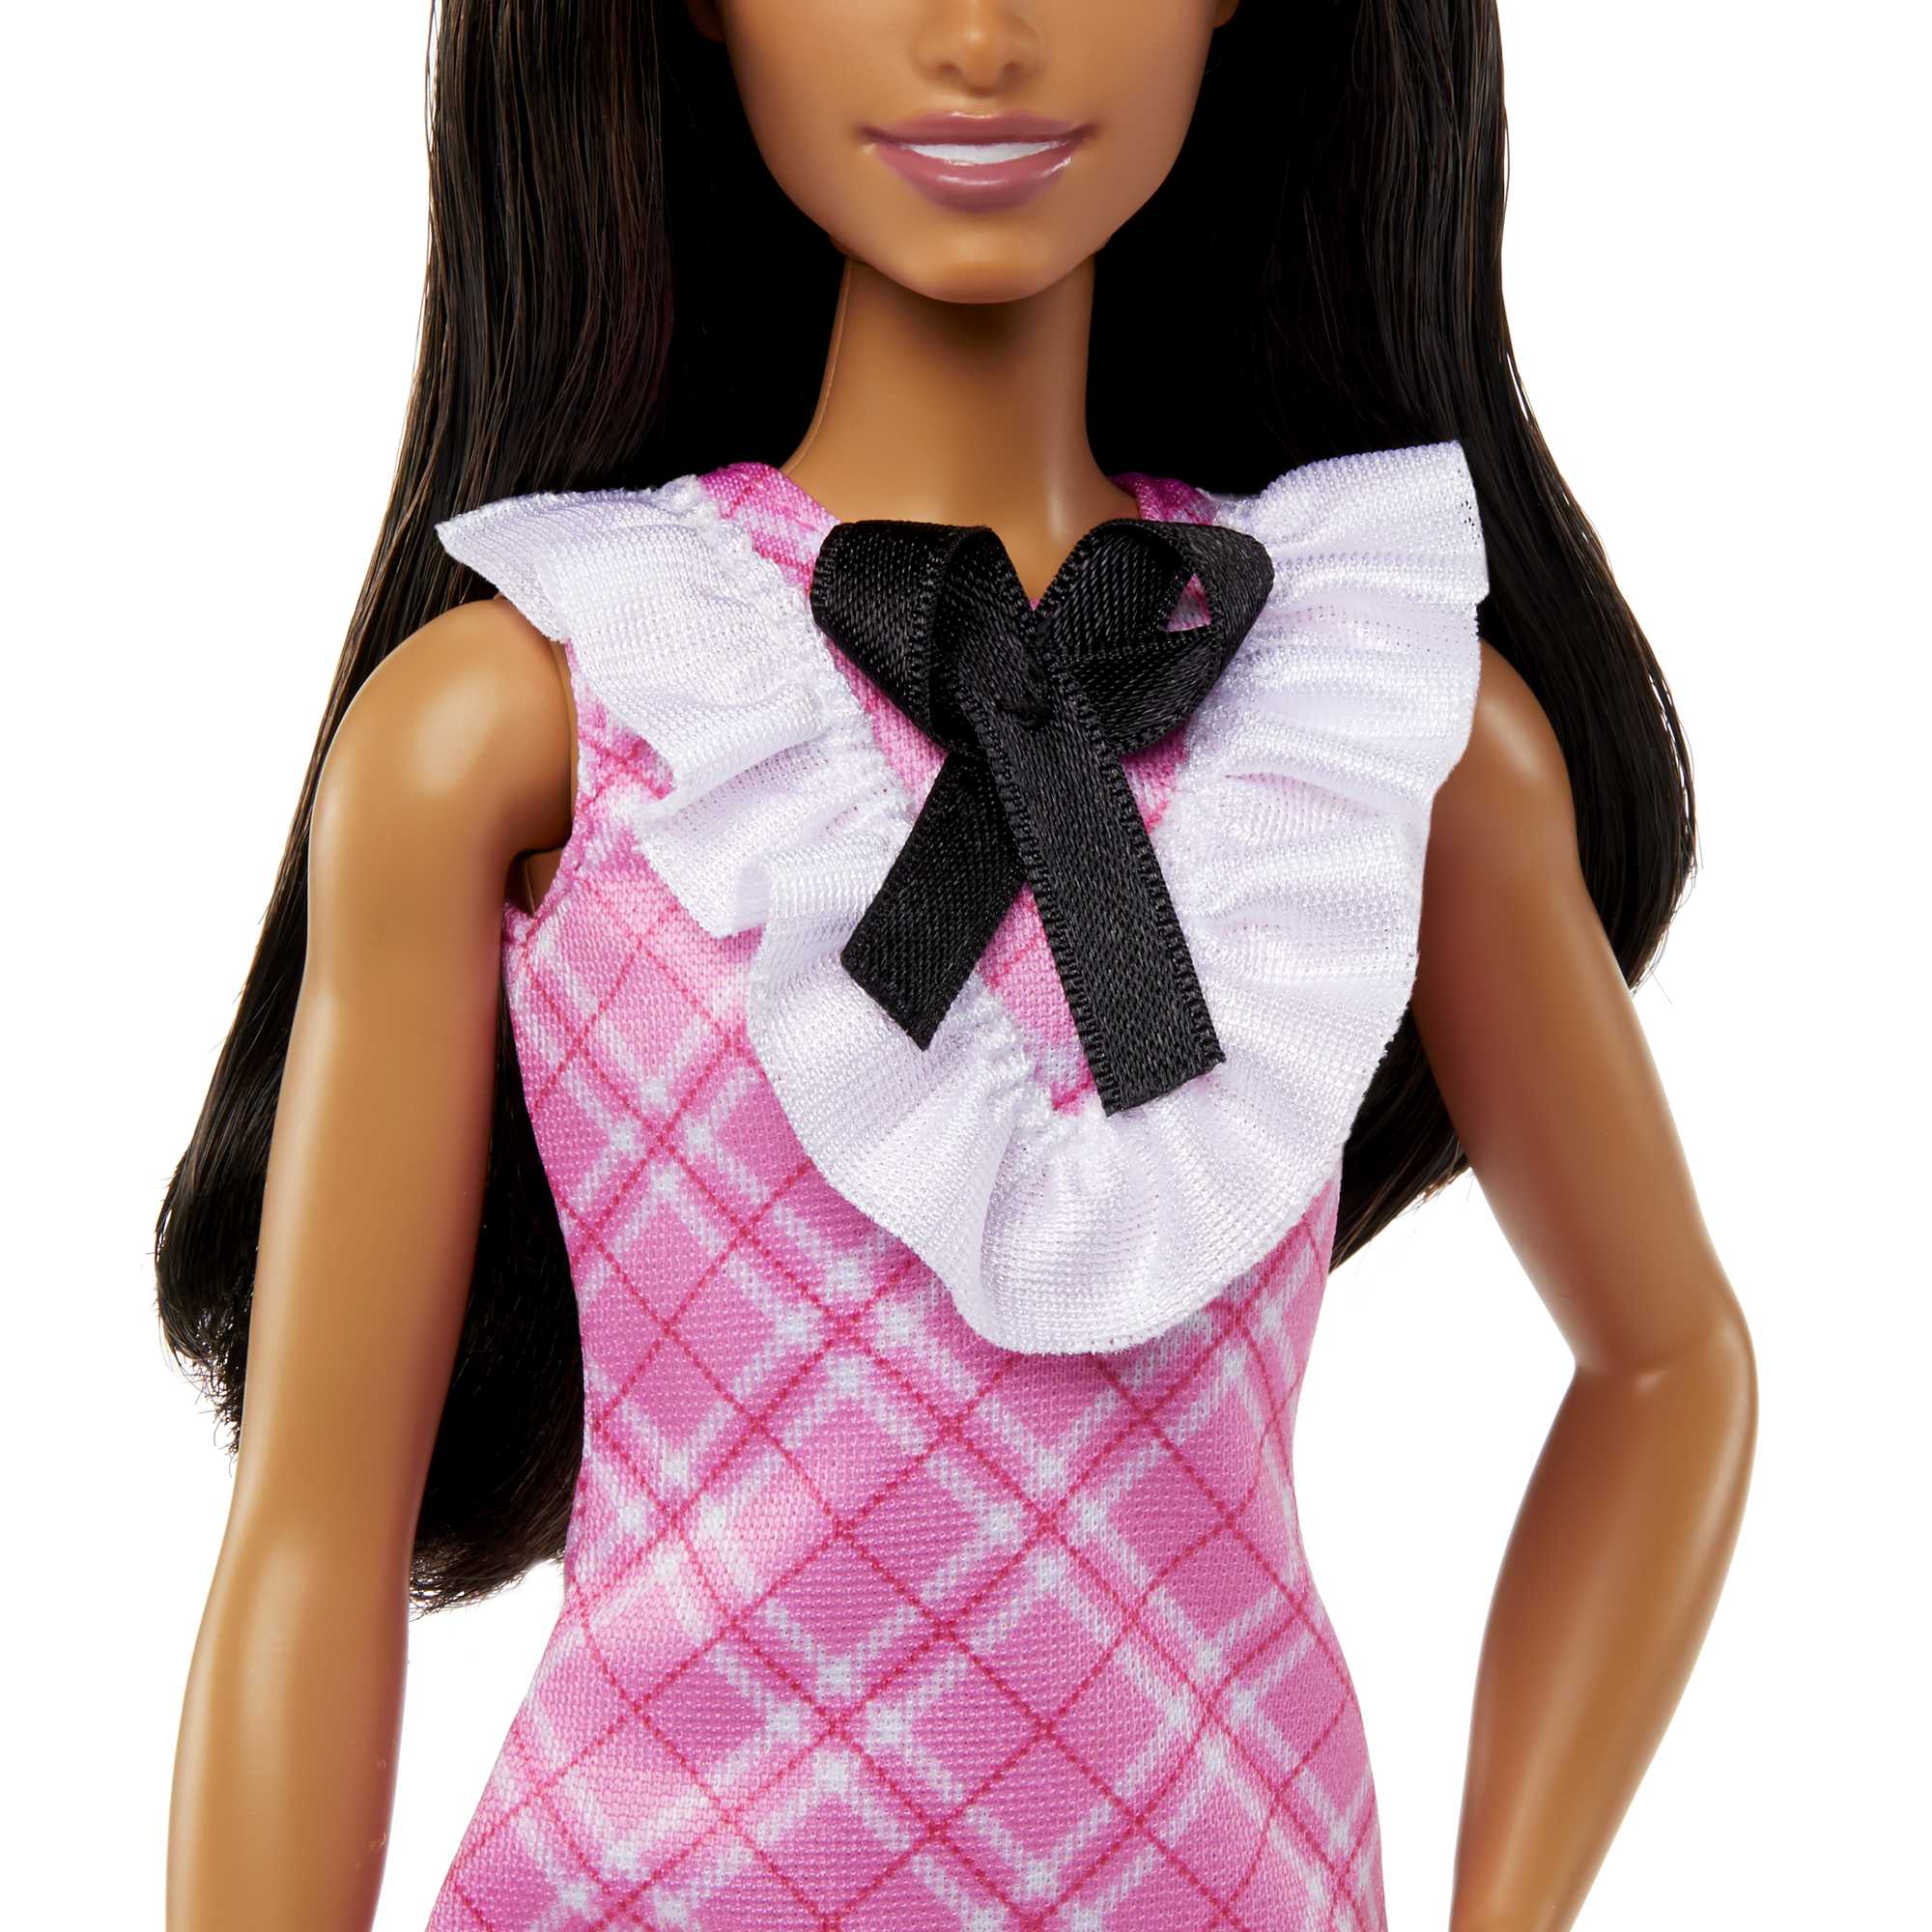 Coffret Poupee Barbie Fashionistas Barbie Noire : Daisy Love Robe Bleu Avec  Jupe Jaune Et Haut Bleu - Poupee Mannequin - Cdiscount Jeux - Jouets